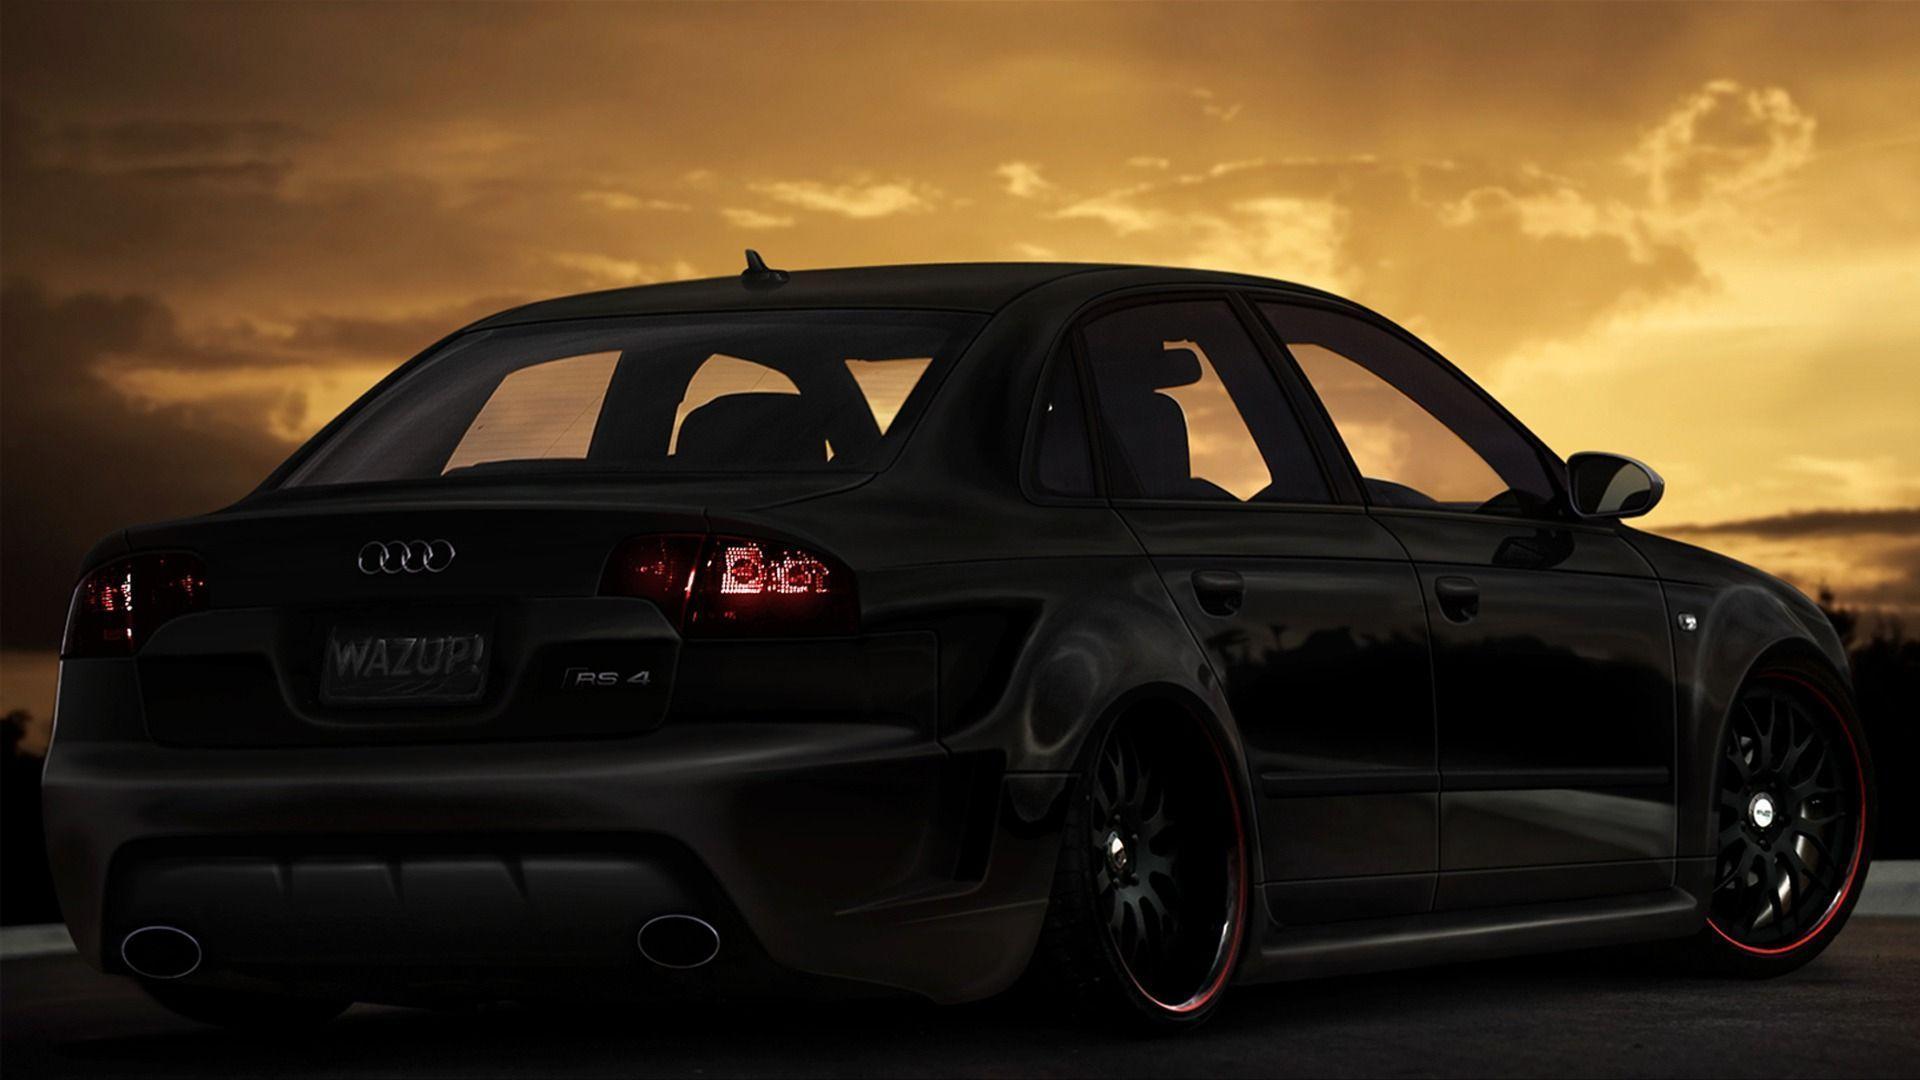 Audi Rs4 wallpaper